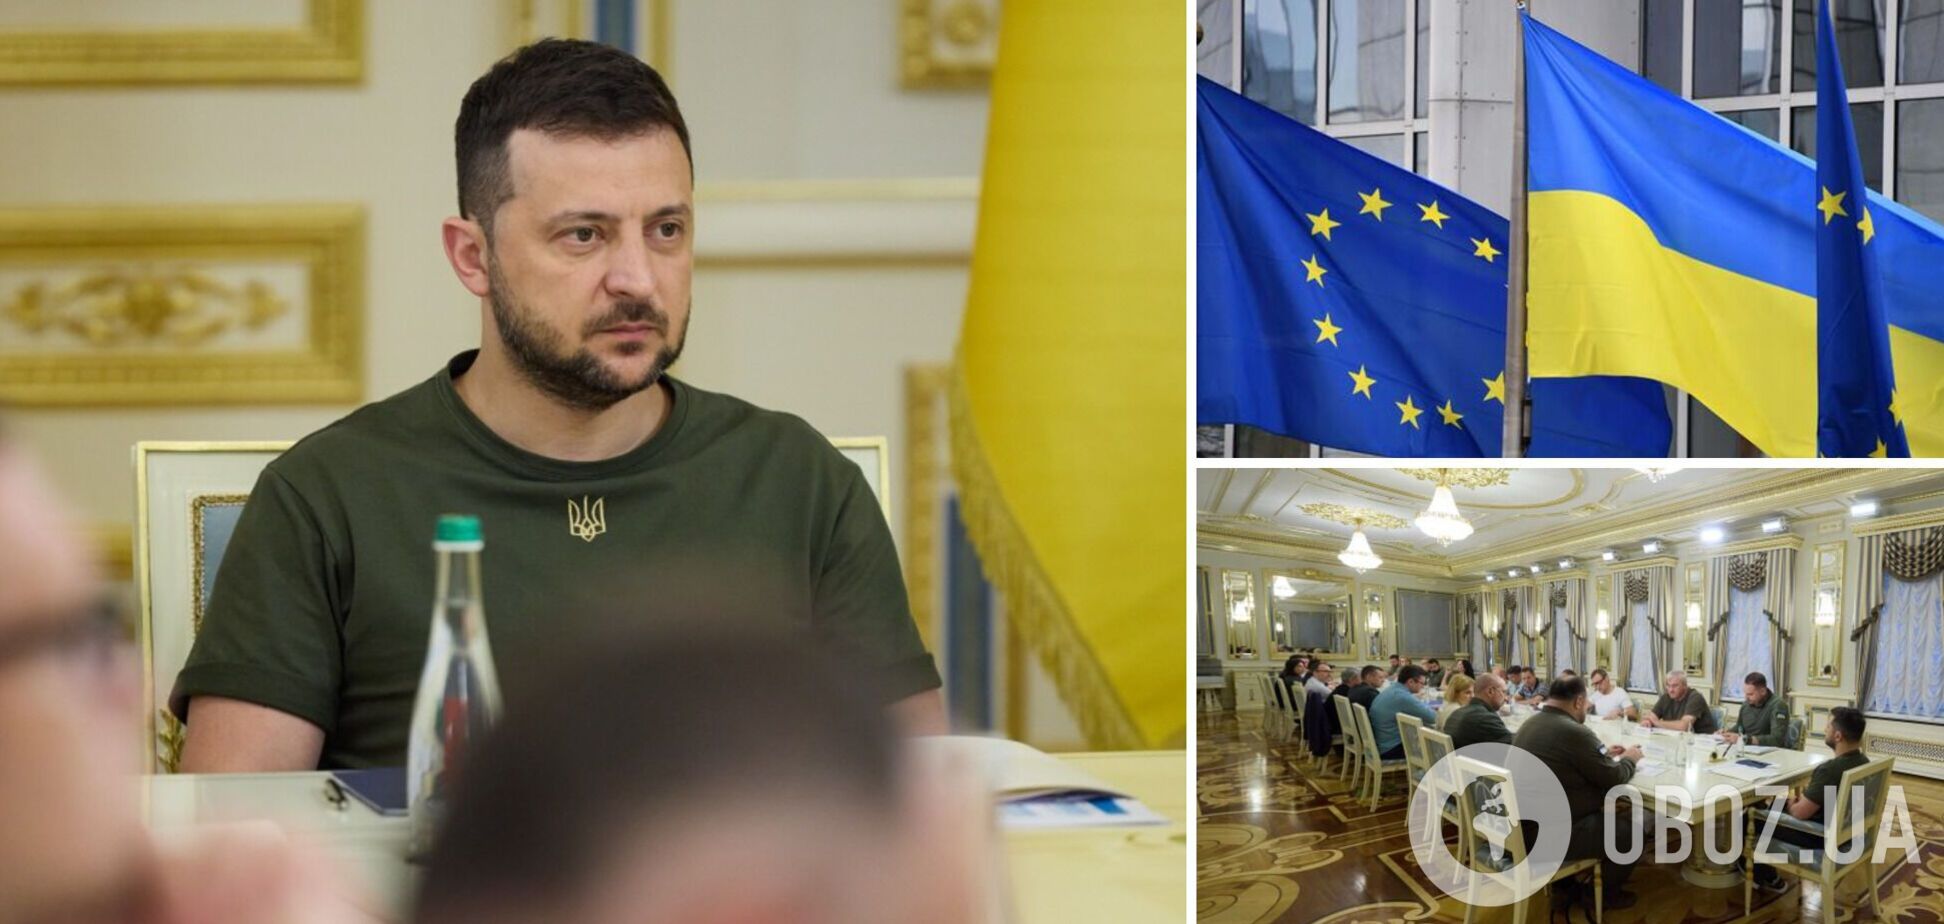 Зеленский провел совещание по подготовке Украины к членству в ЕС после получения статуса кандидата